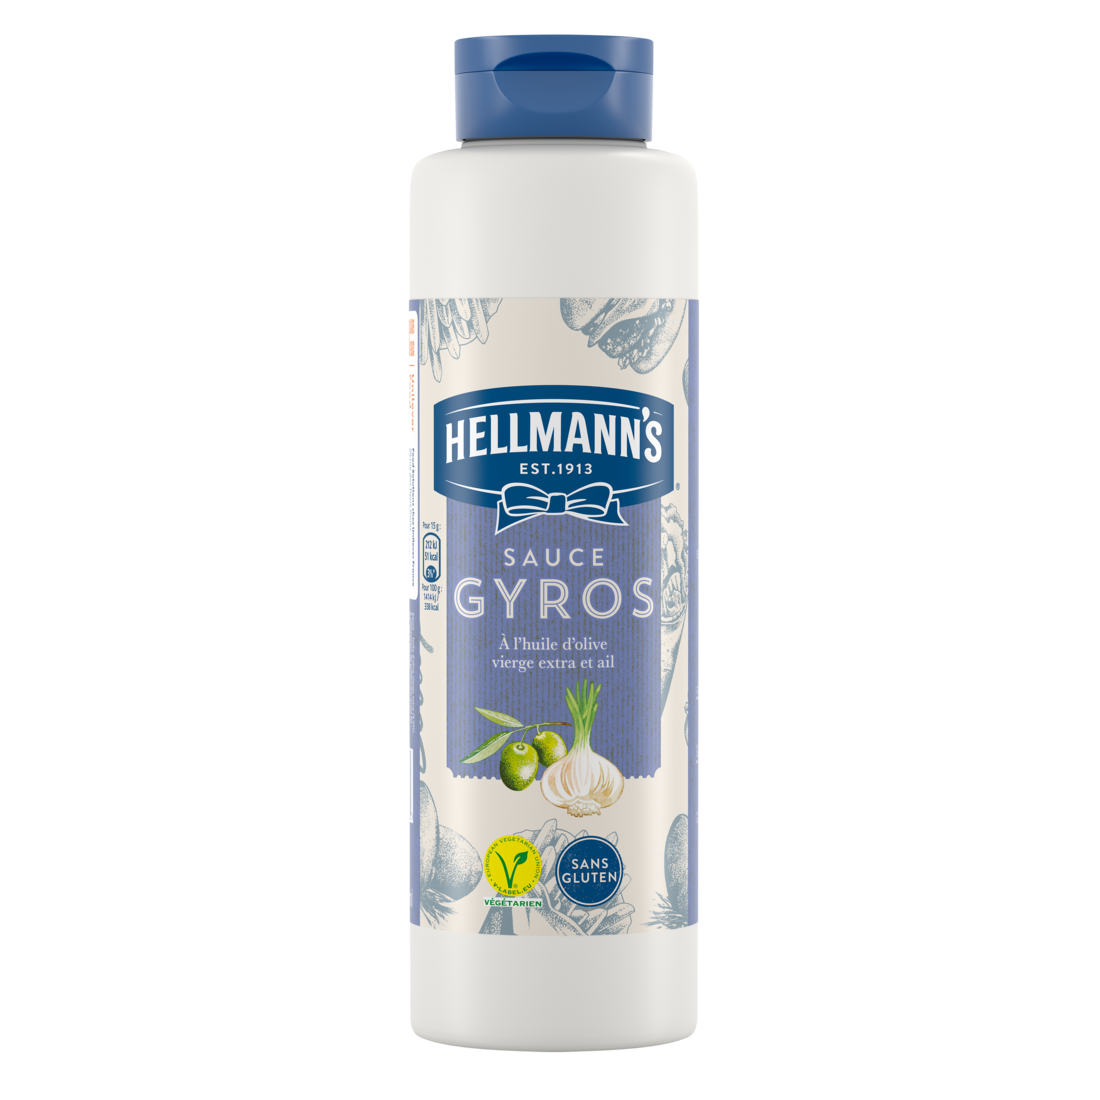 Hellmann's Sauce Gyros 850 ml - Sauces de variété Hellmann’s